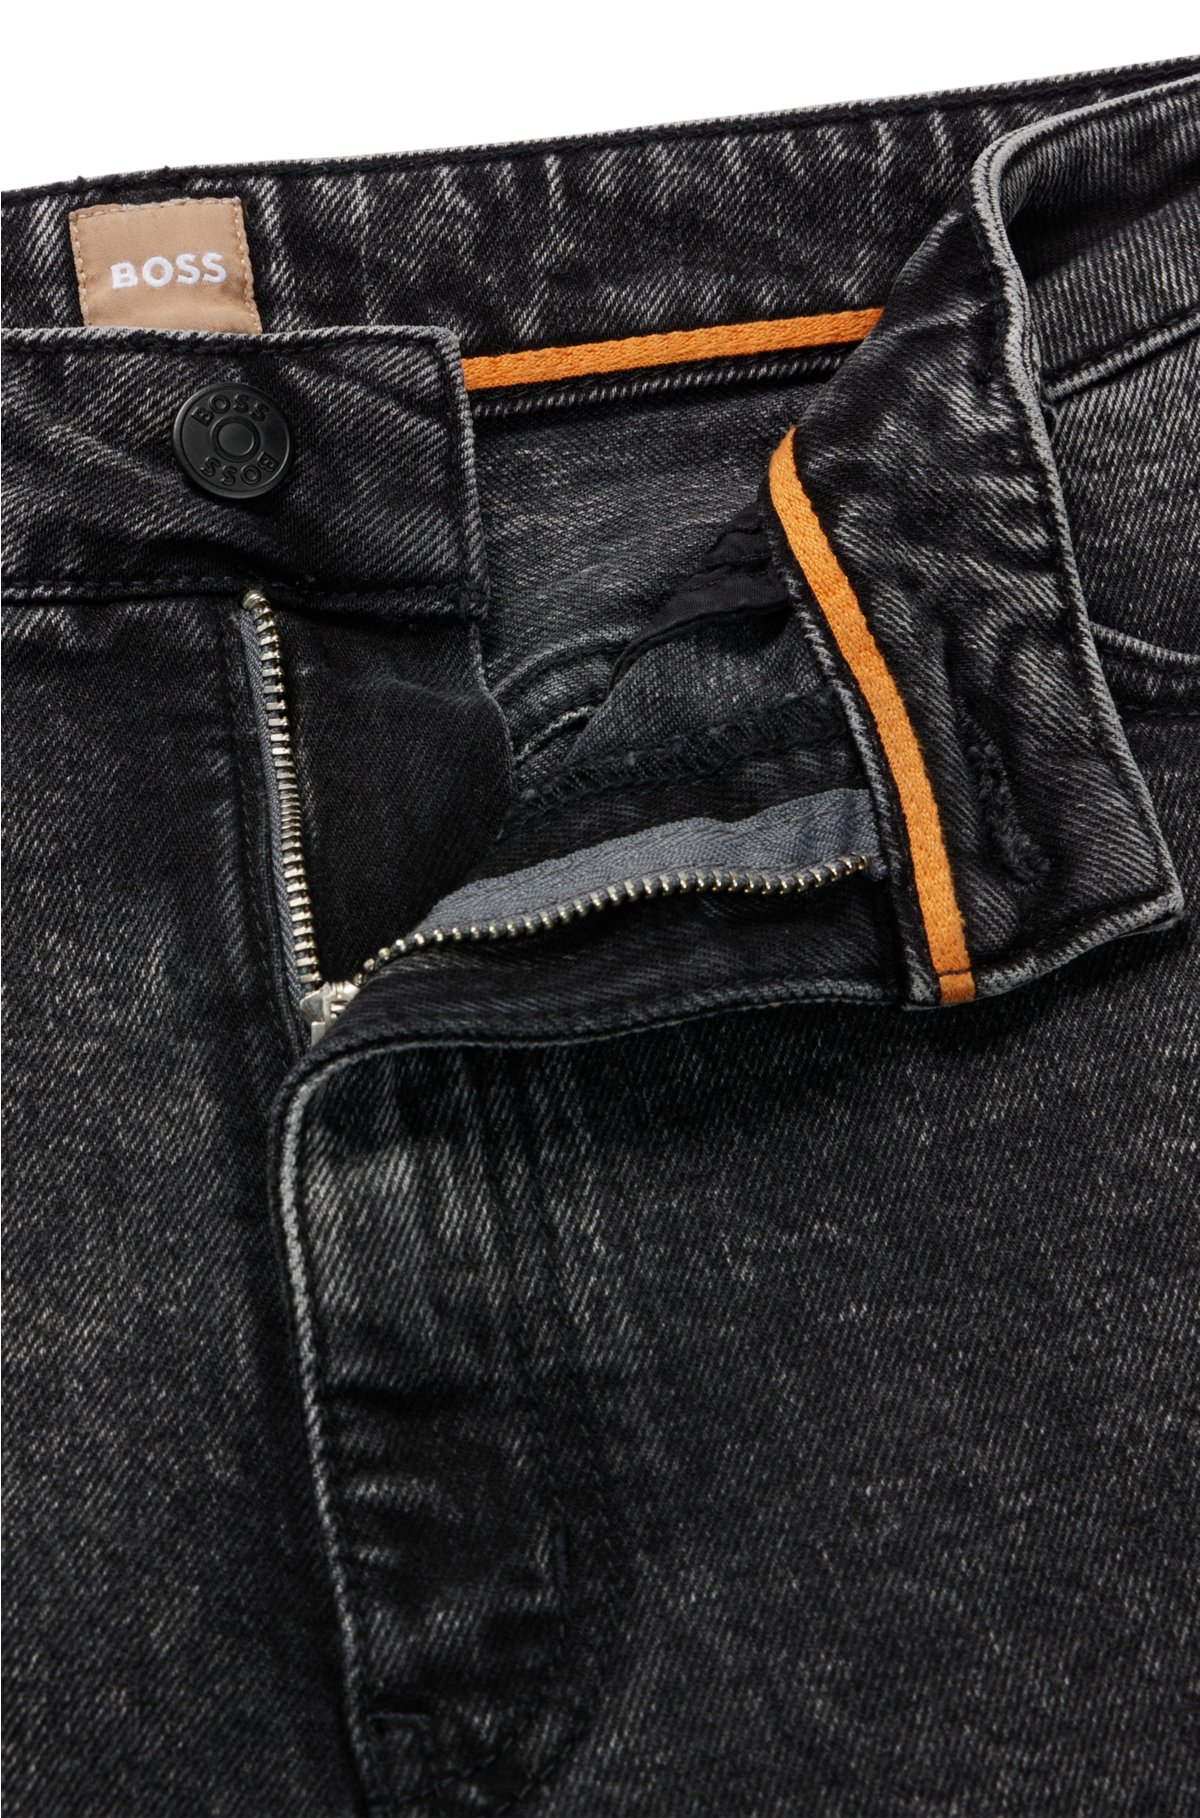 Skru ned ækvator Eksklusiv BOSS - High-waisted jeans in black comfort-stretch denim